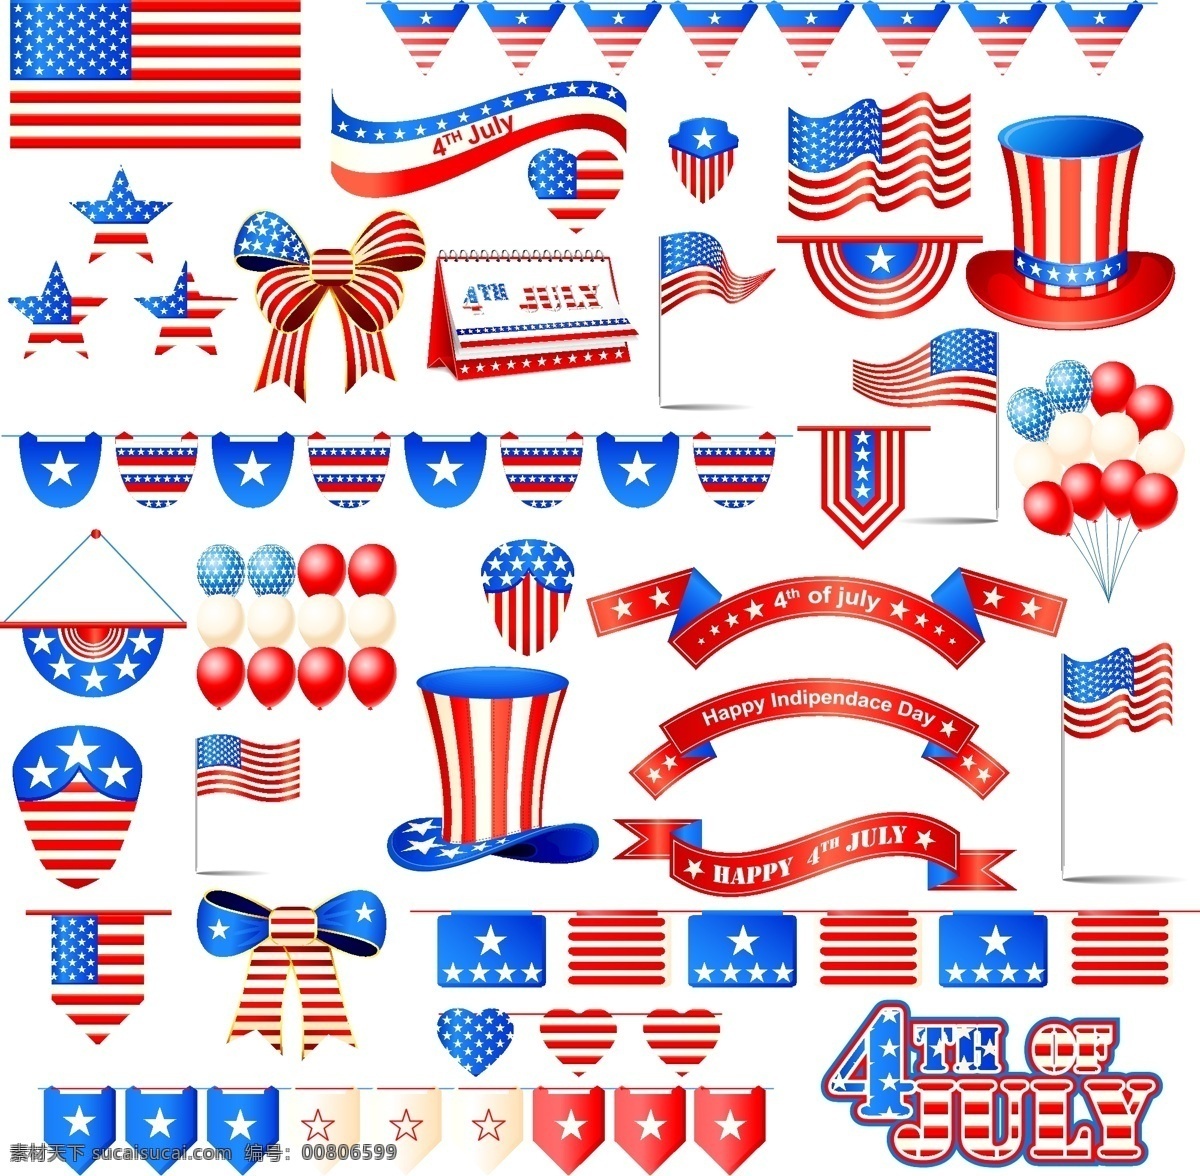 美国 独立日 装饰 图案 矢量素材 设计素材 背景素材